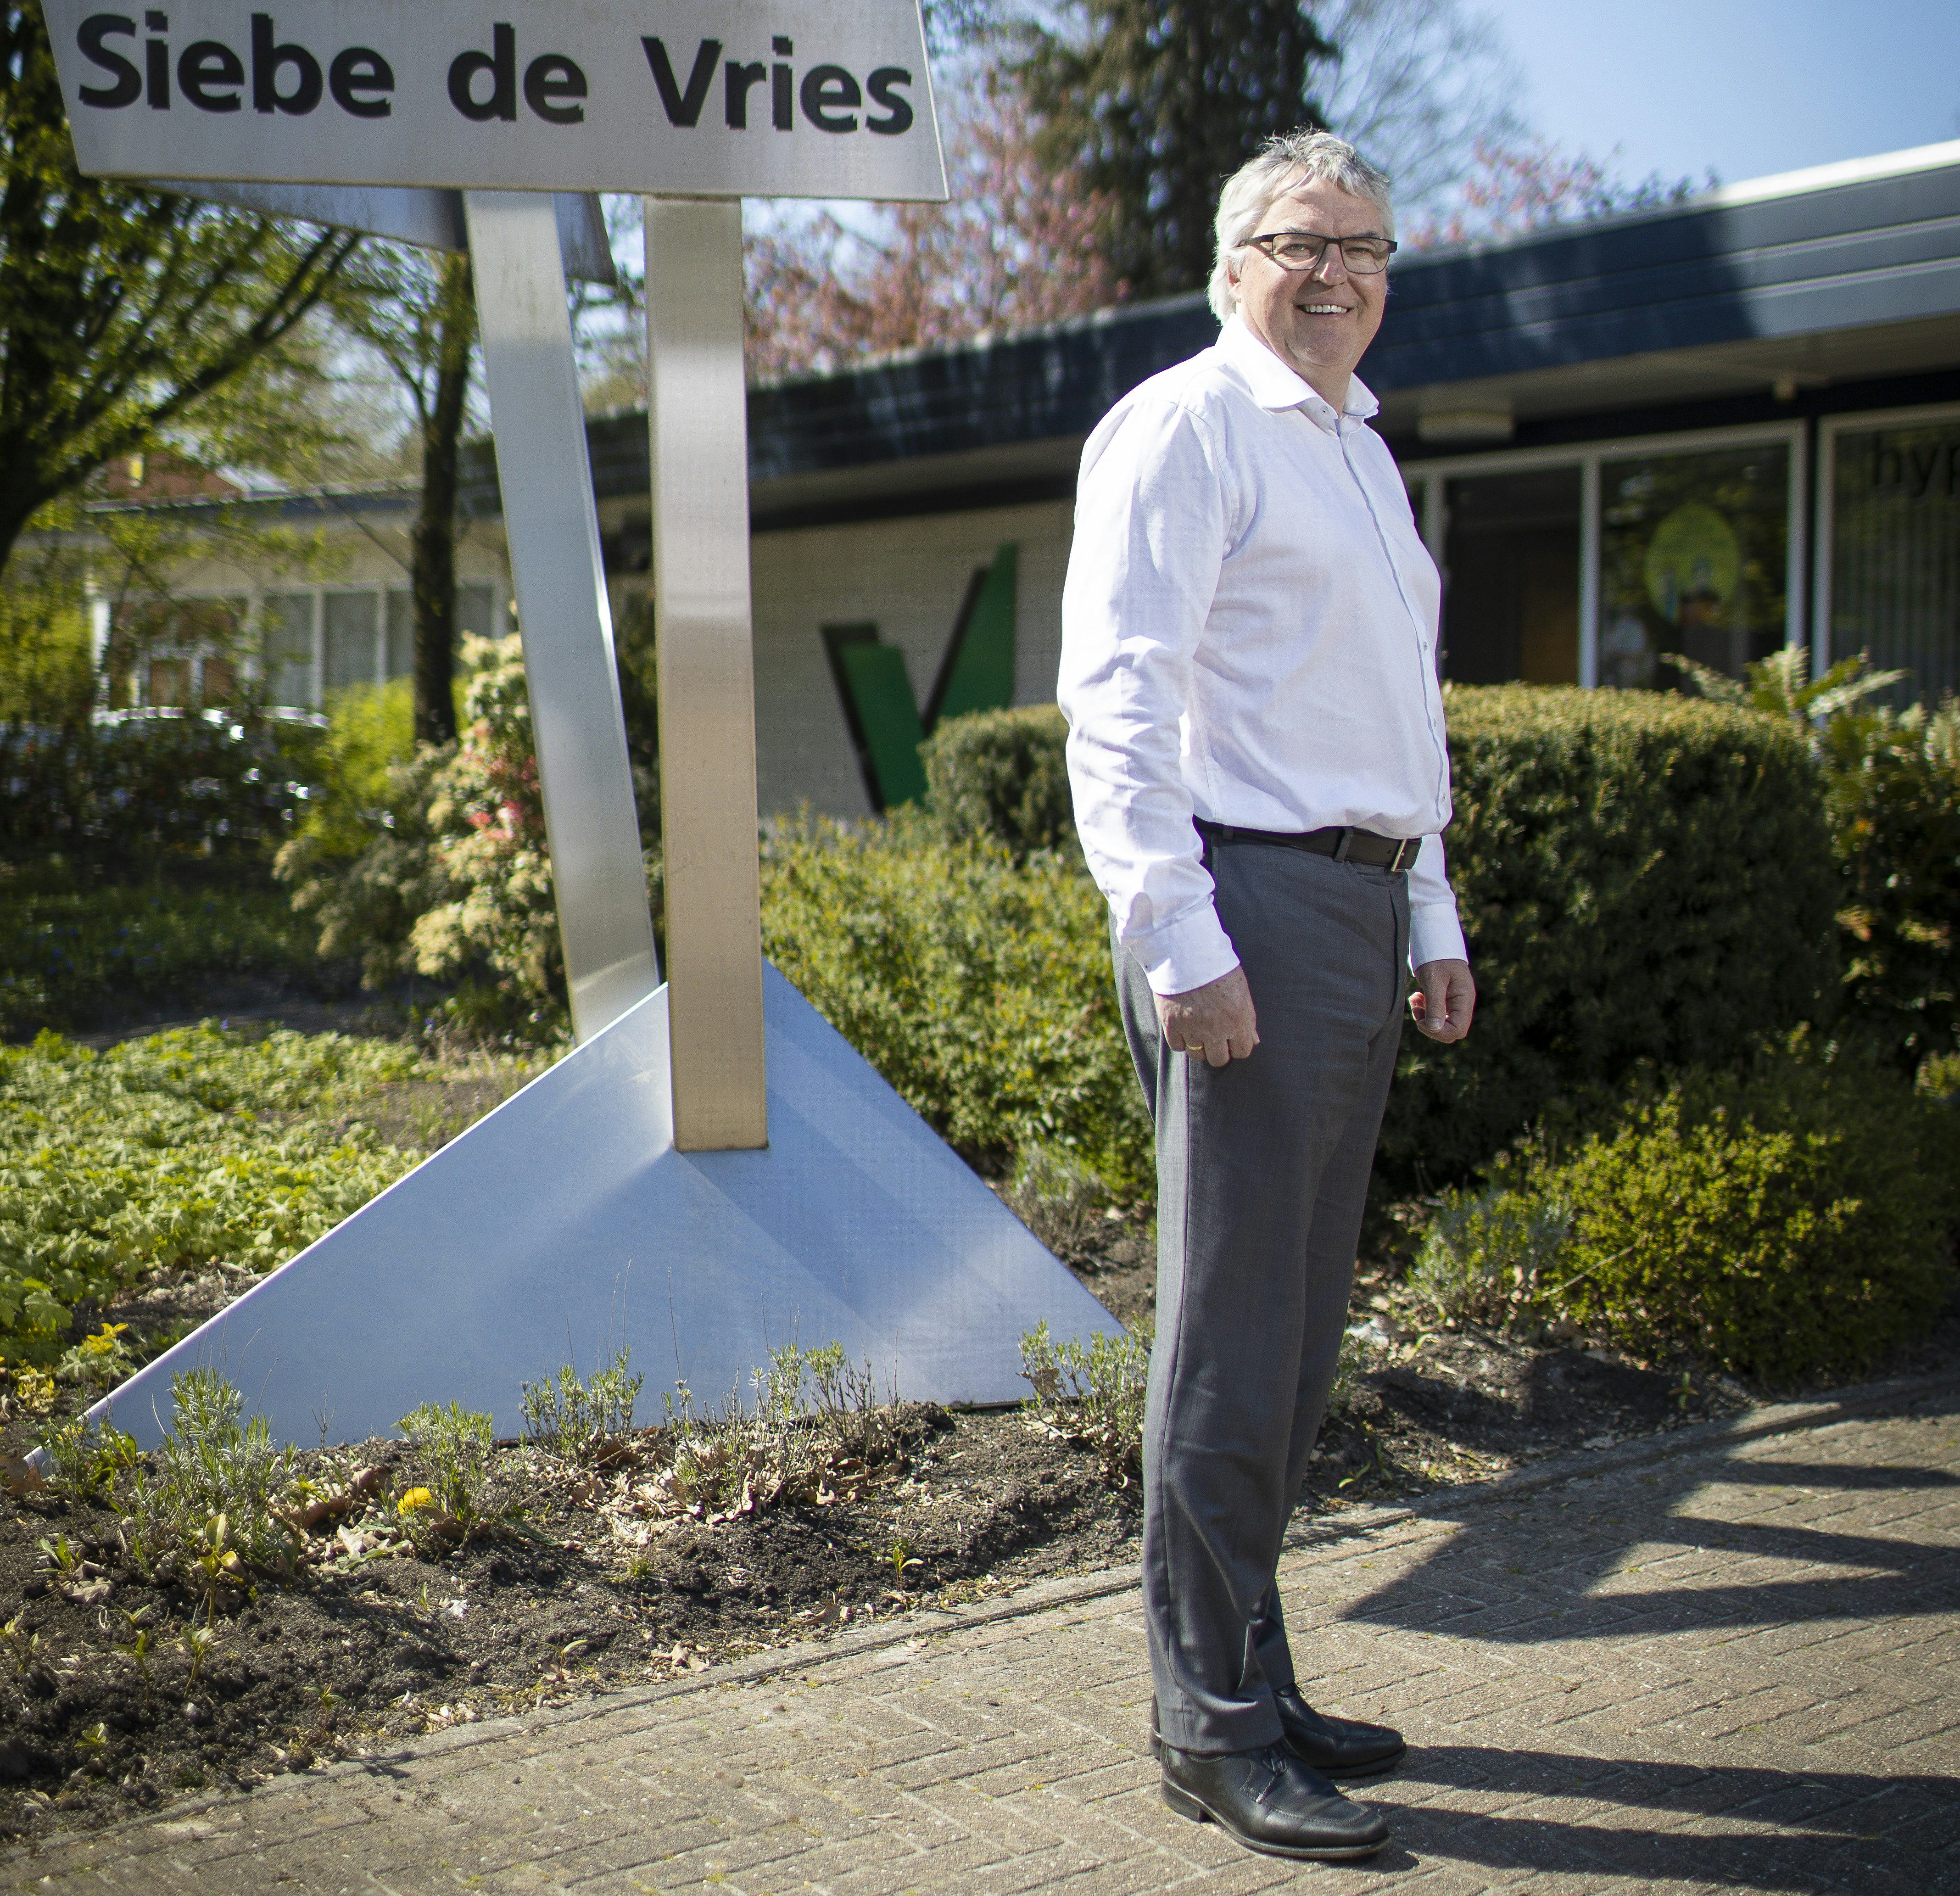 Siebe de Vries van verzekeringskantoor Siebe de Vries.